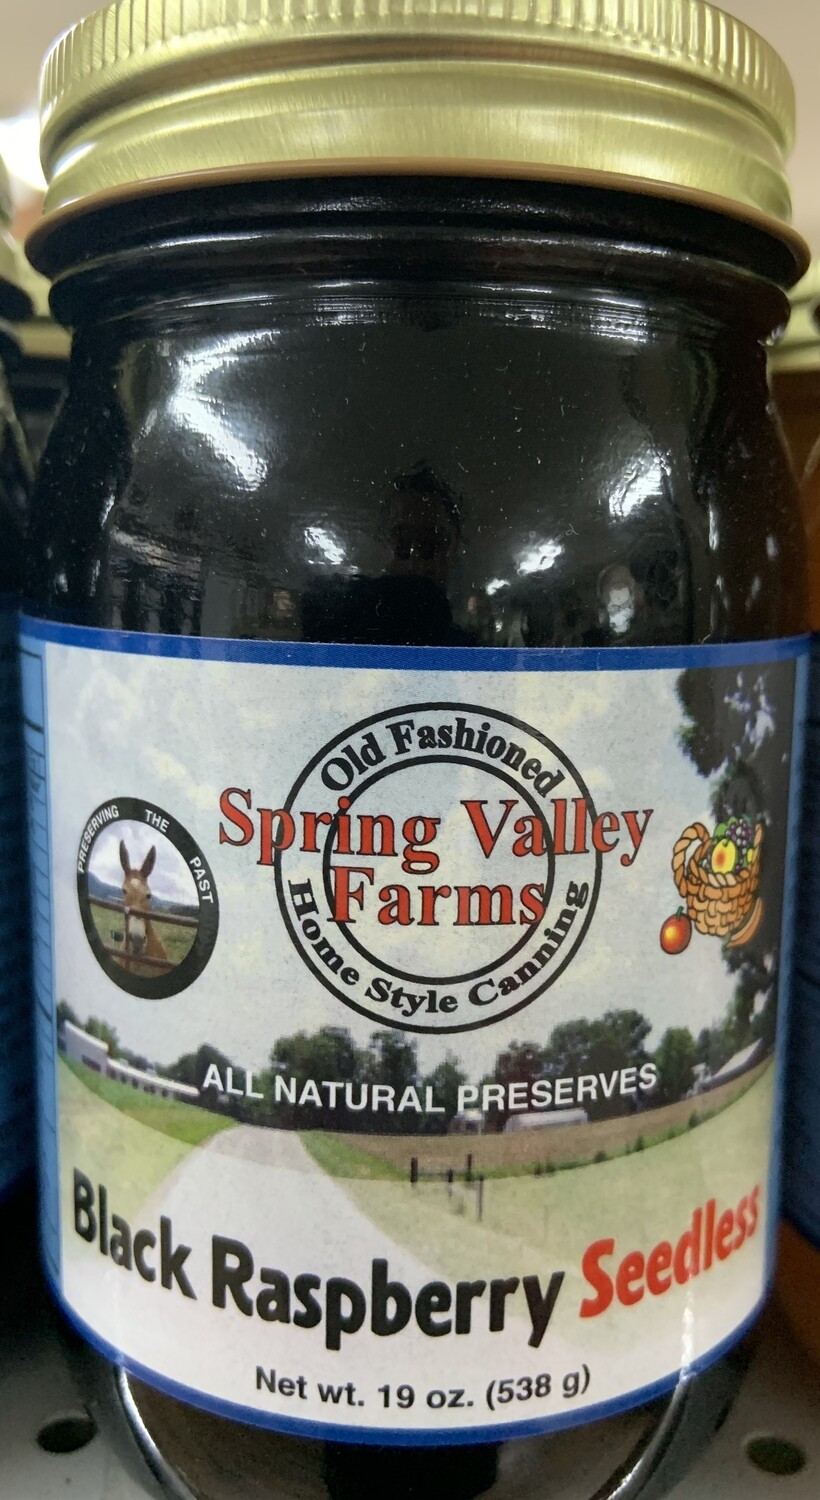 Spring Valley Farms Black Raspberry Seedless Preserves 19oz